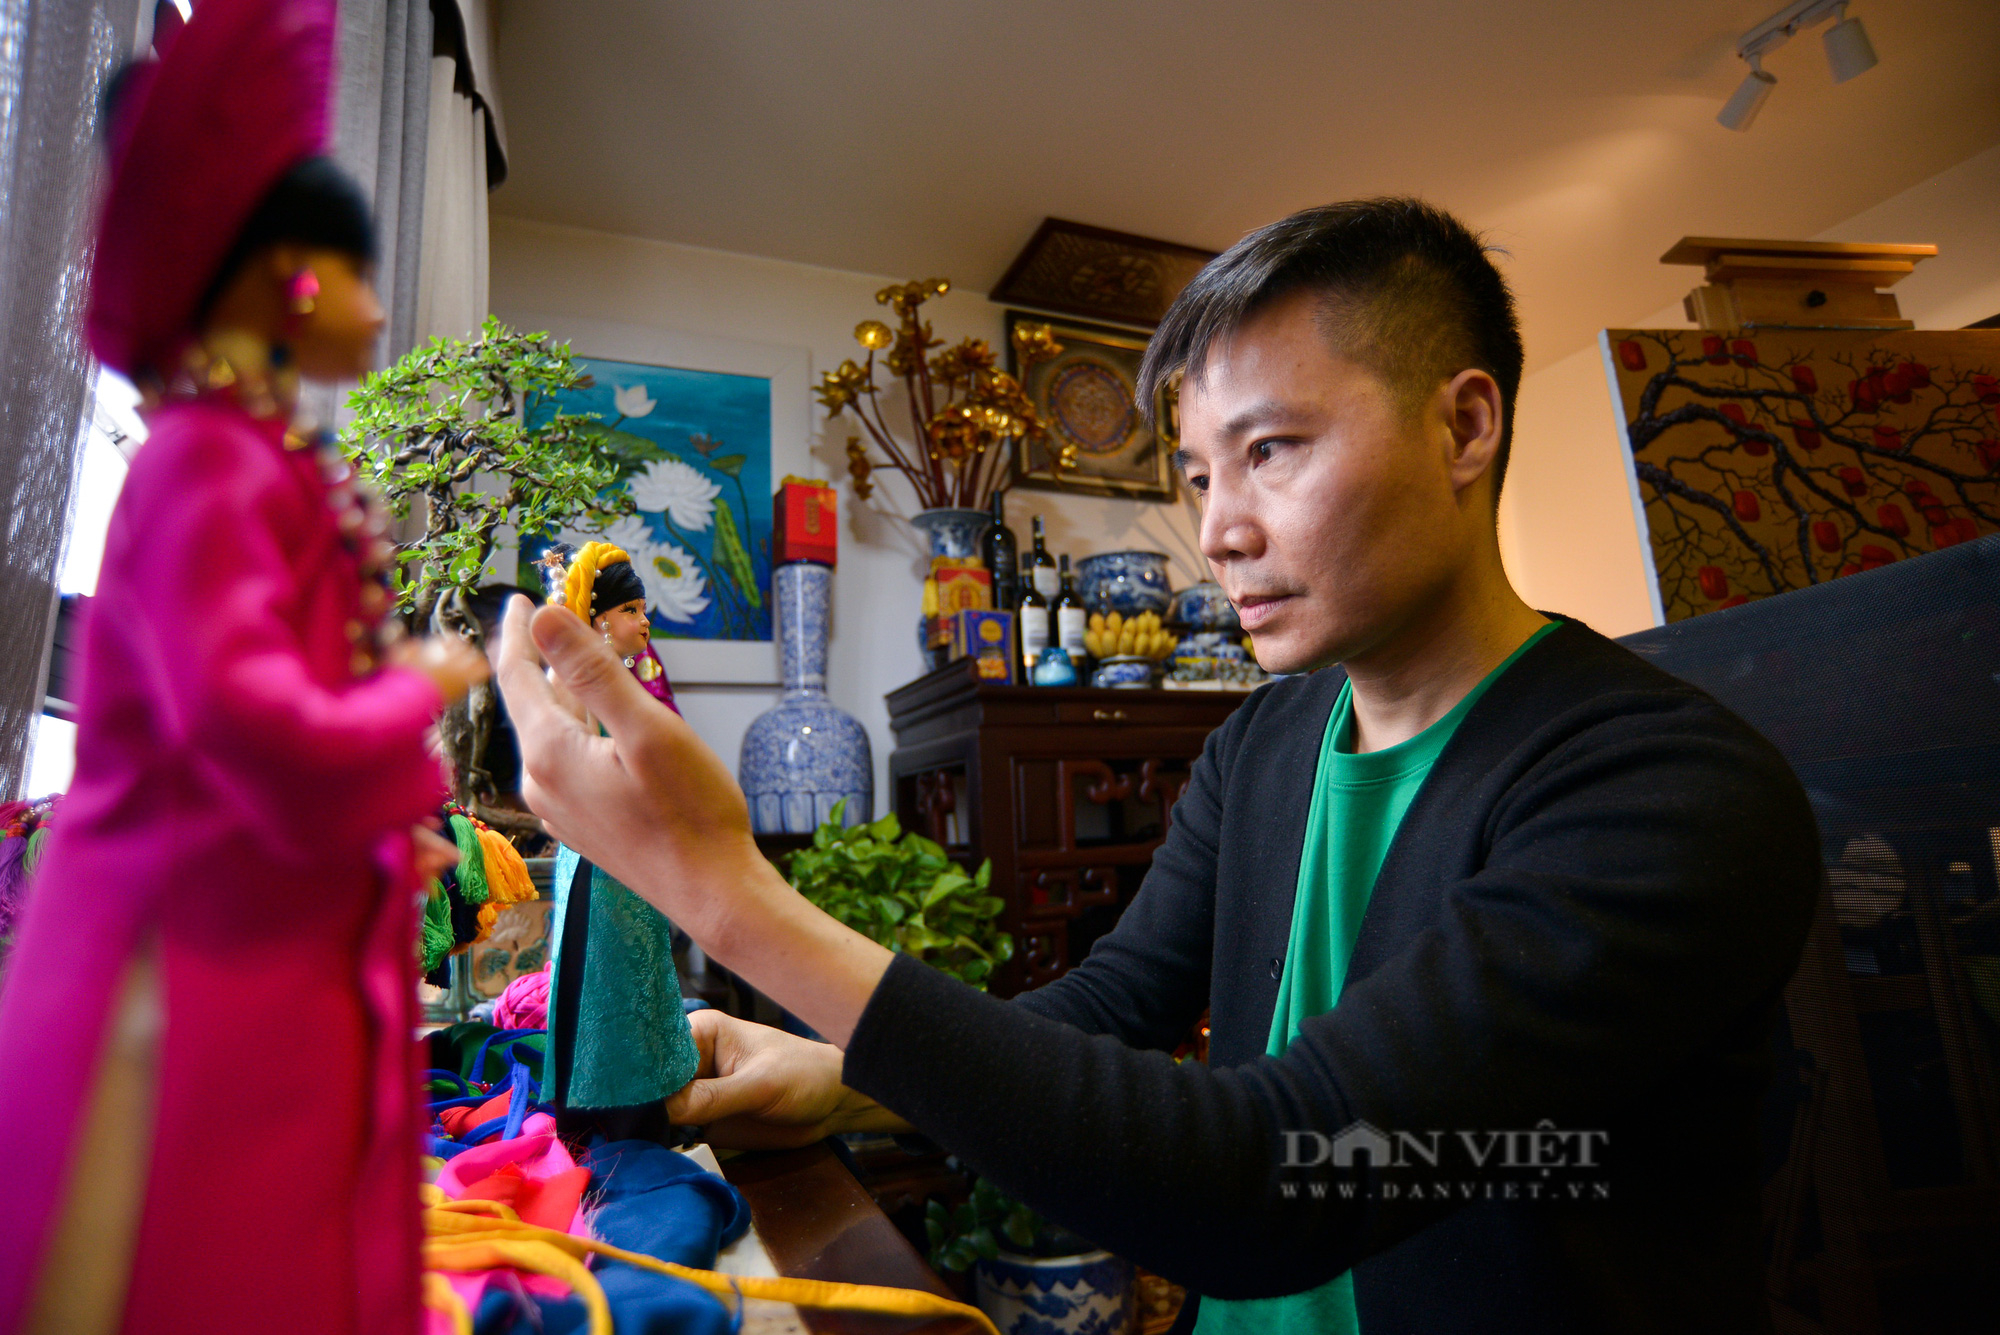 Người nghệ sĩ ‘mê thổi hồn’ búp bê để lưu giữ nét văn hóa 54 dân tộc Việt - Ảnh 3.